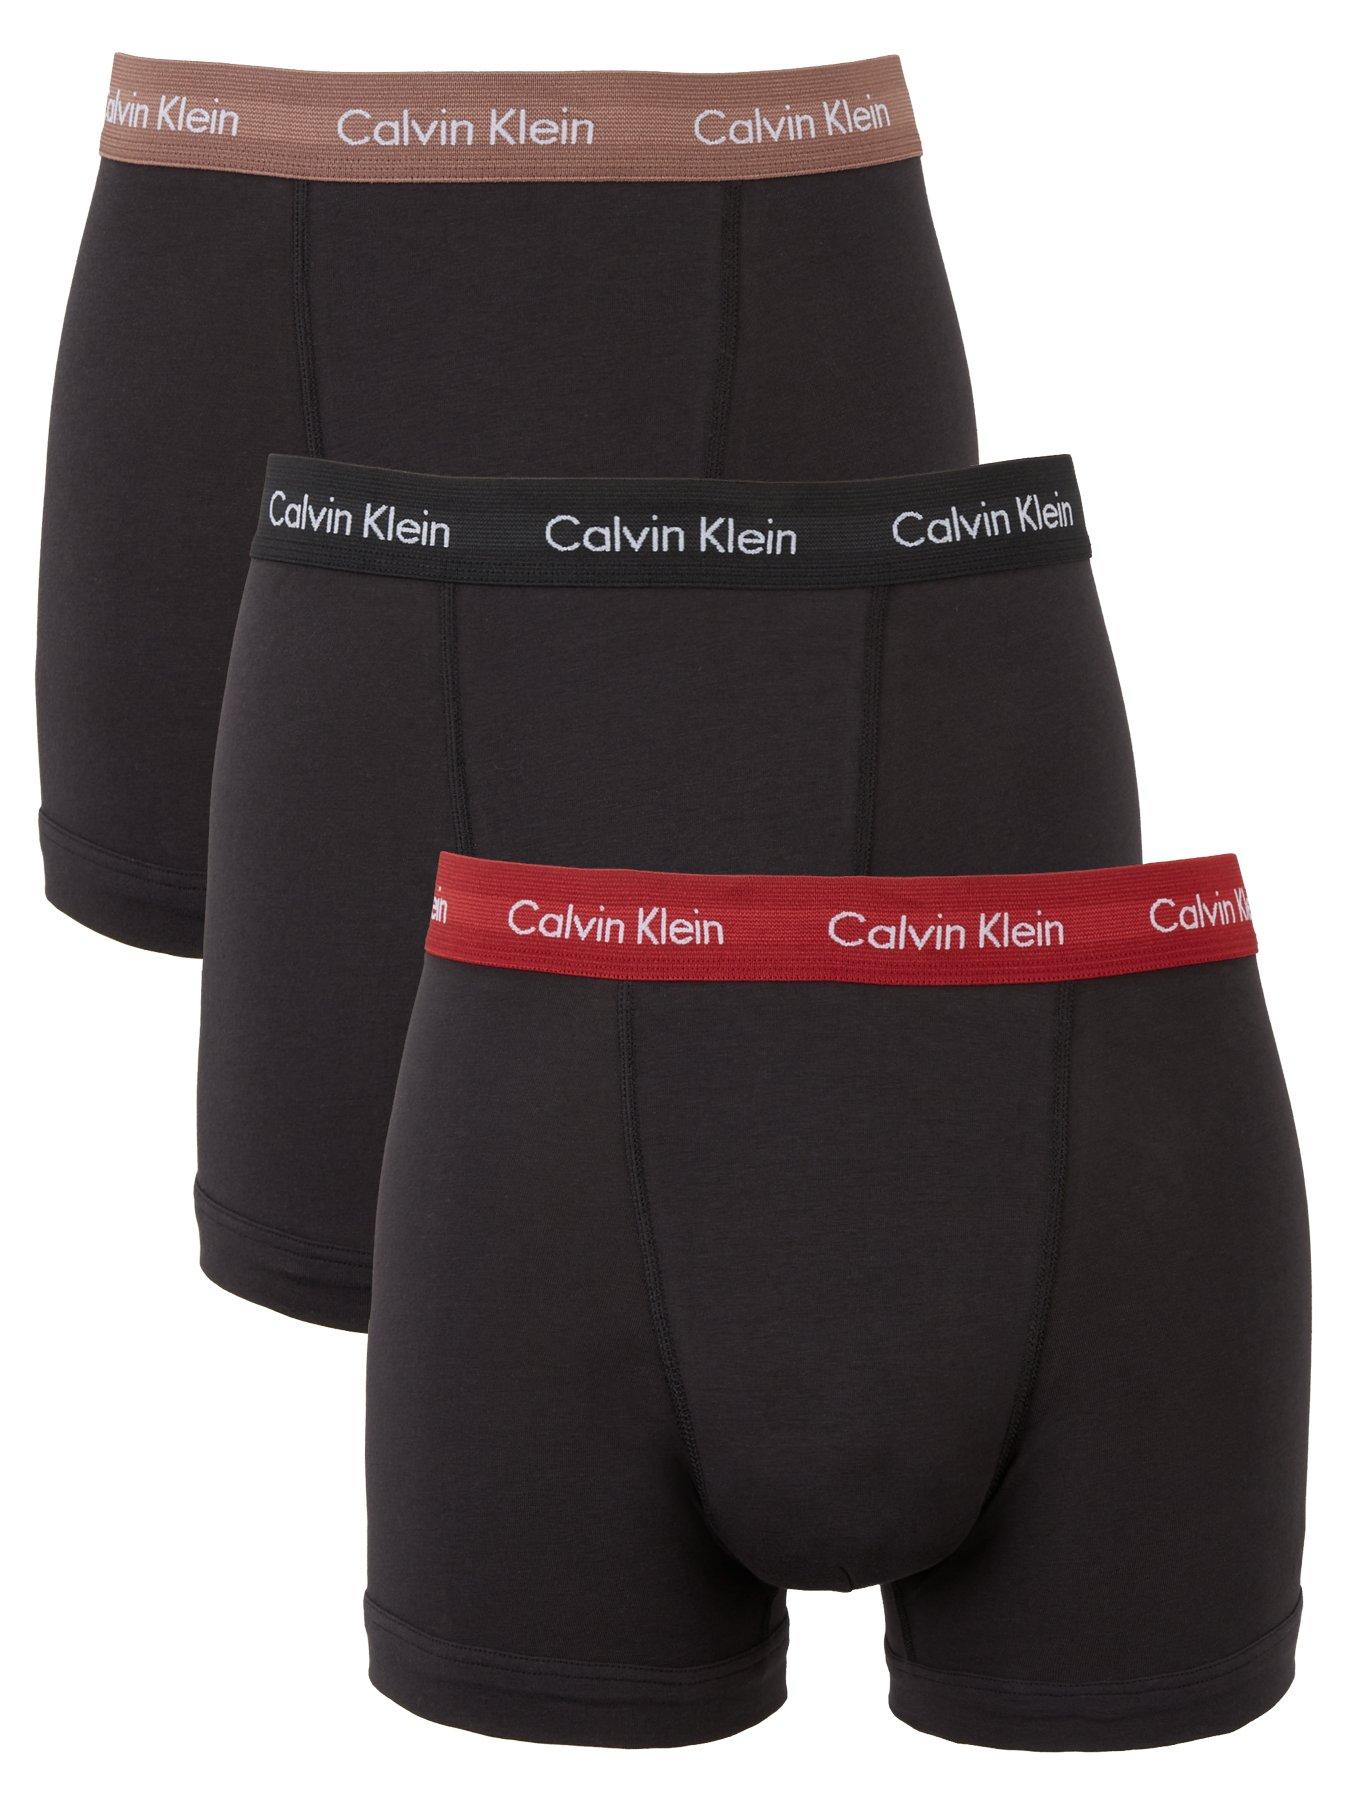 Mens Clothing Underwear Boxers briefs Calvin Klein Cotton Brief in Black for Men 